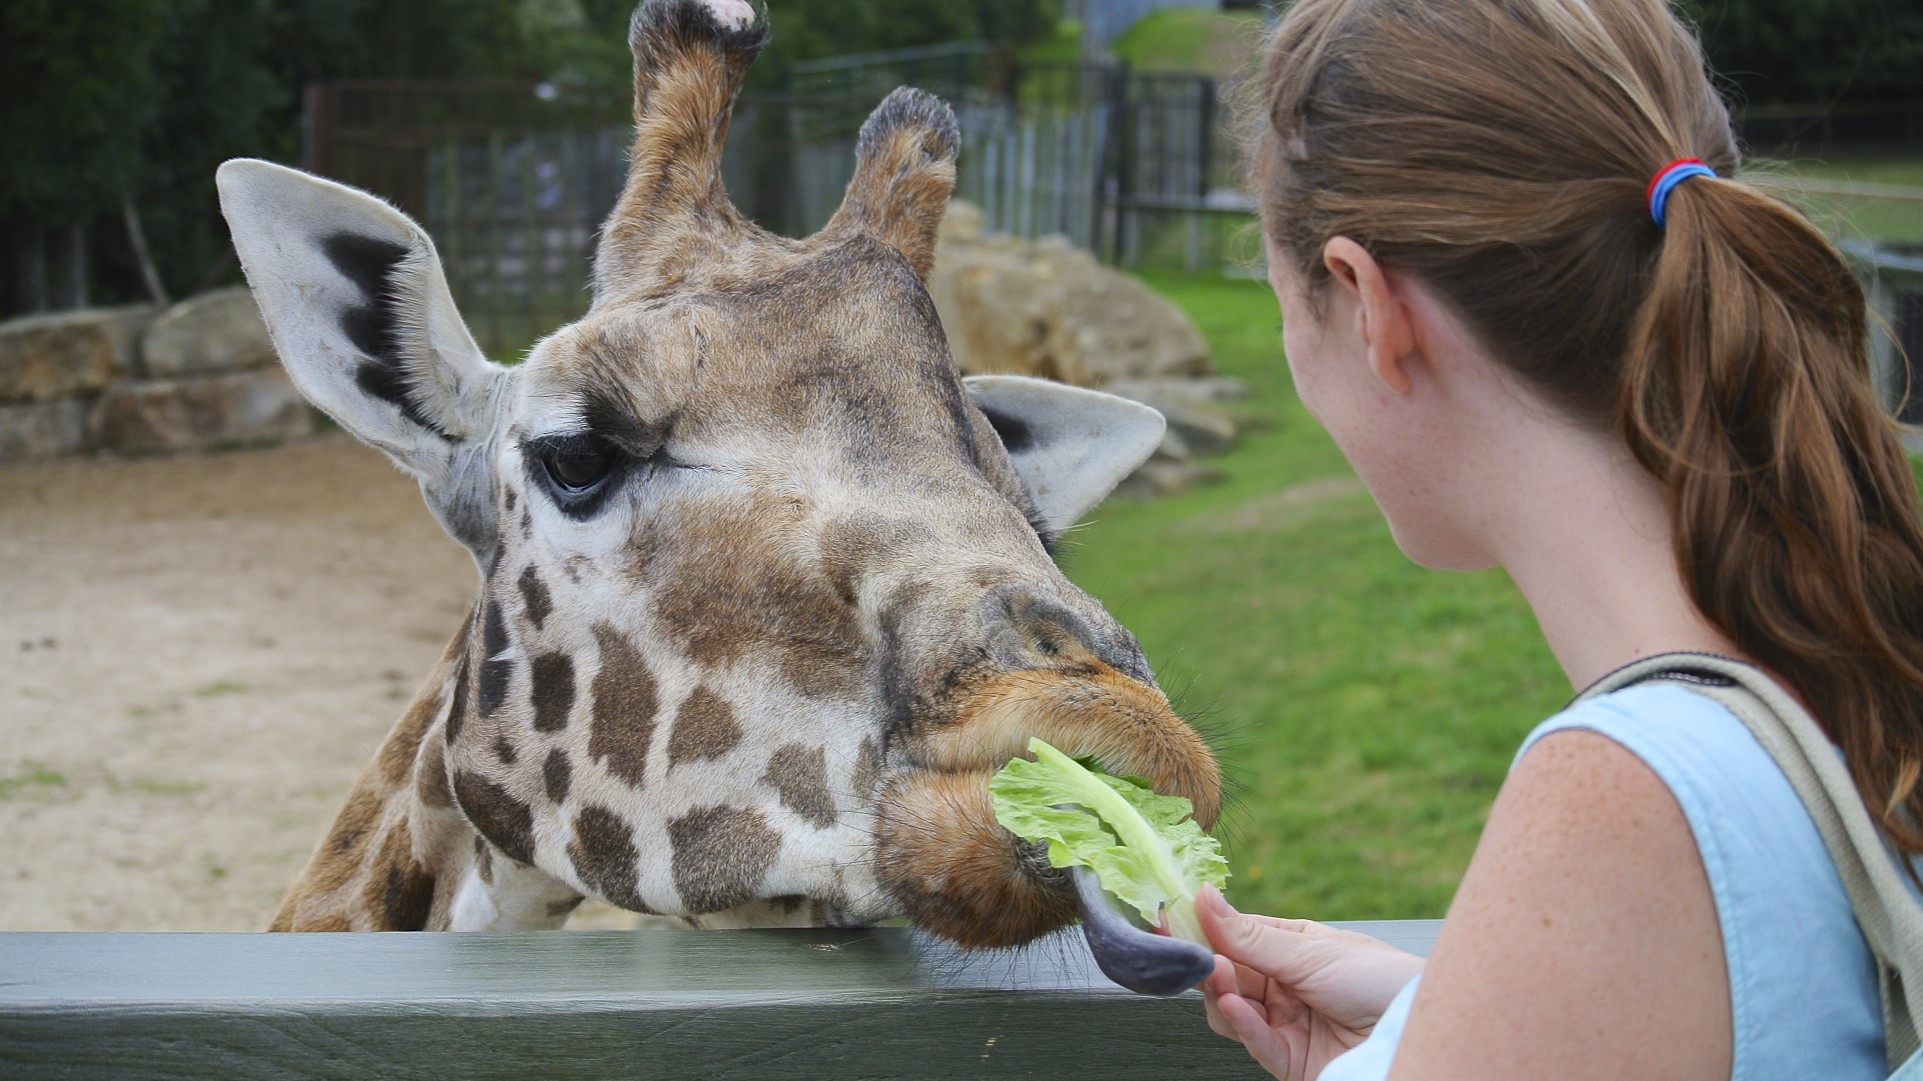 File:Feeding the giraffe at Longleat (9657707014).jpg - Wikimedia ...